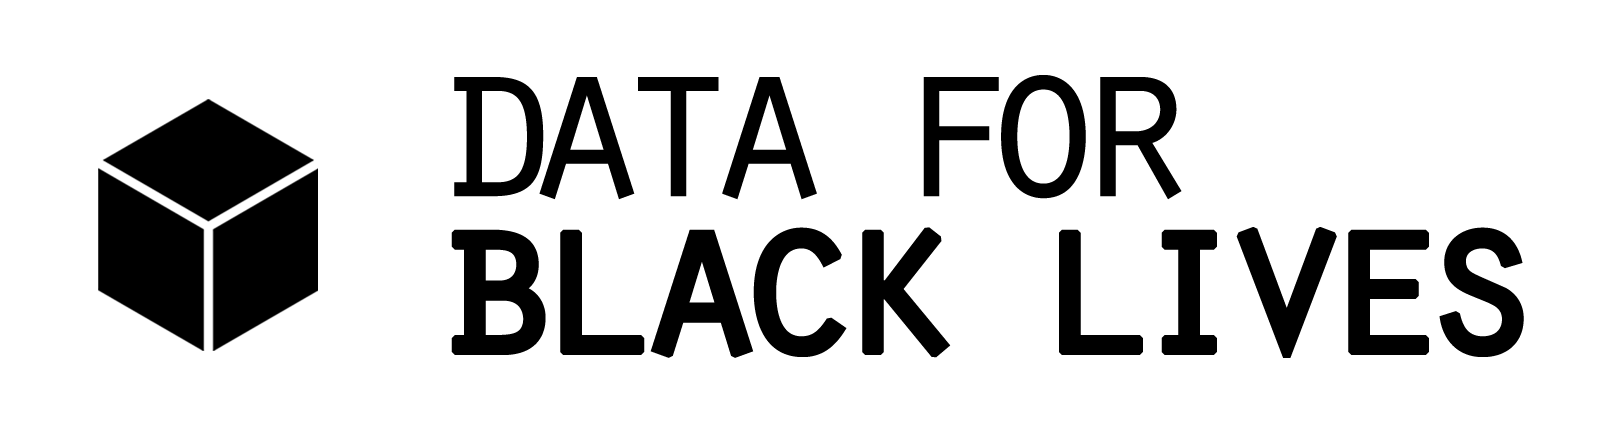 Data for Black Lives logo